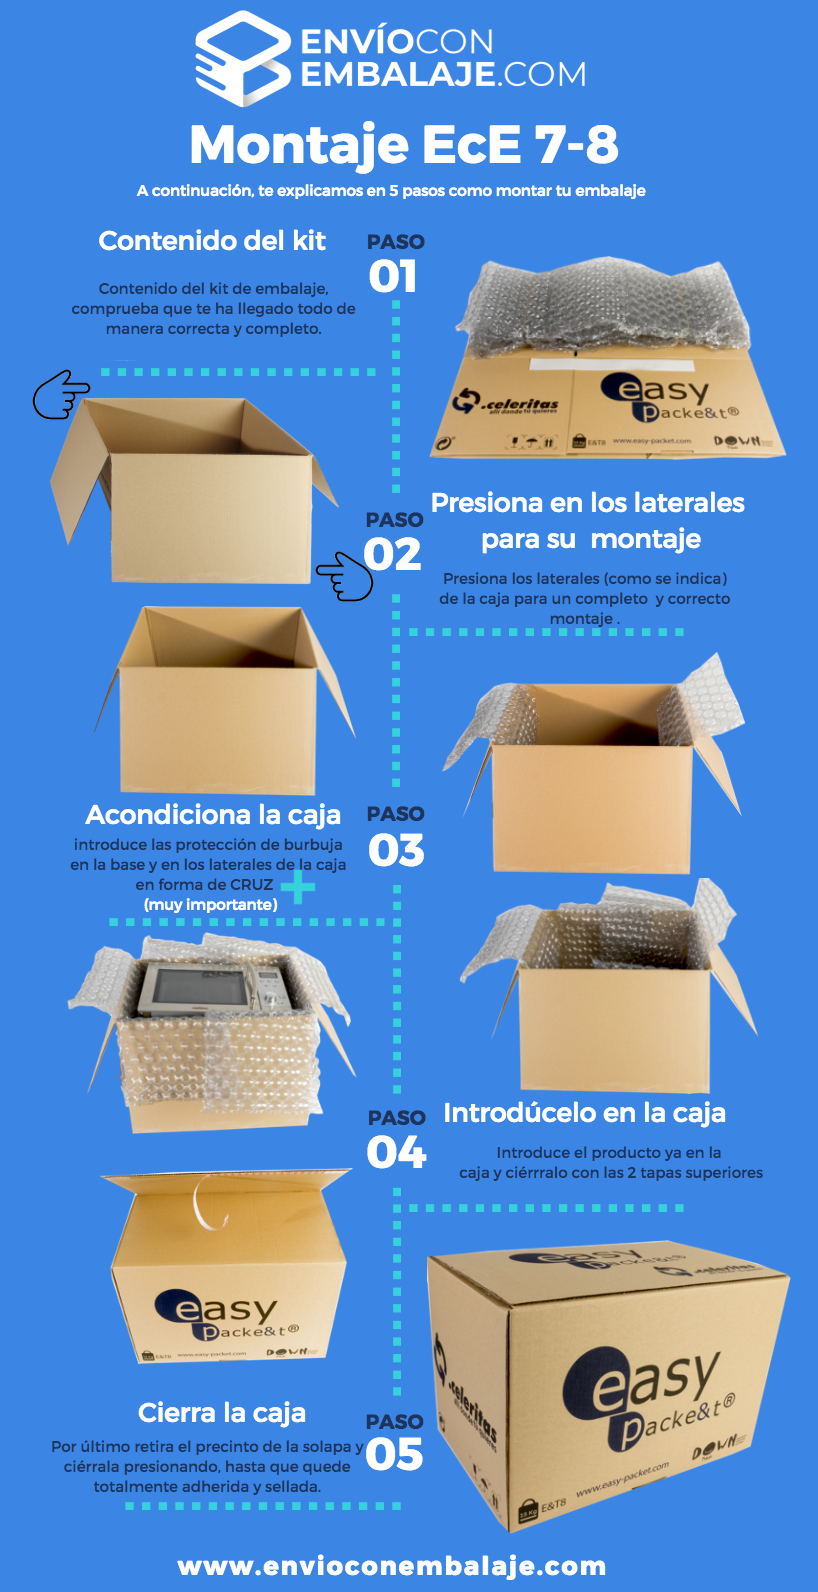 Embalaje y packaging. Diferentes tipos de embalajes ofertados por envioconembalaje: cajas de cartón, vinos, documentos y maletas. Instrucción de montaje.